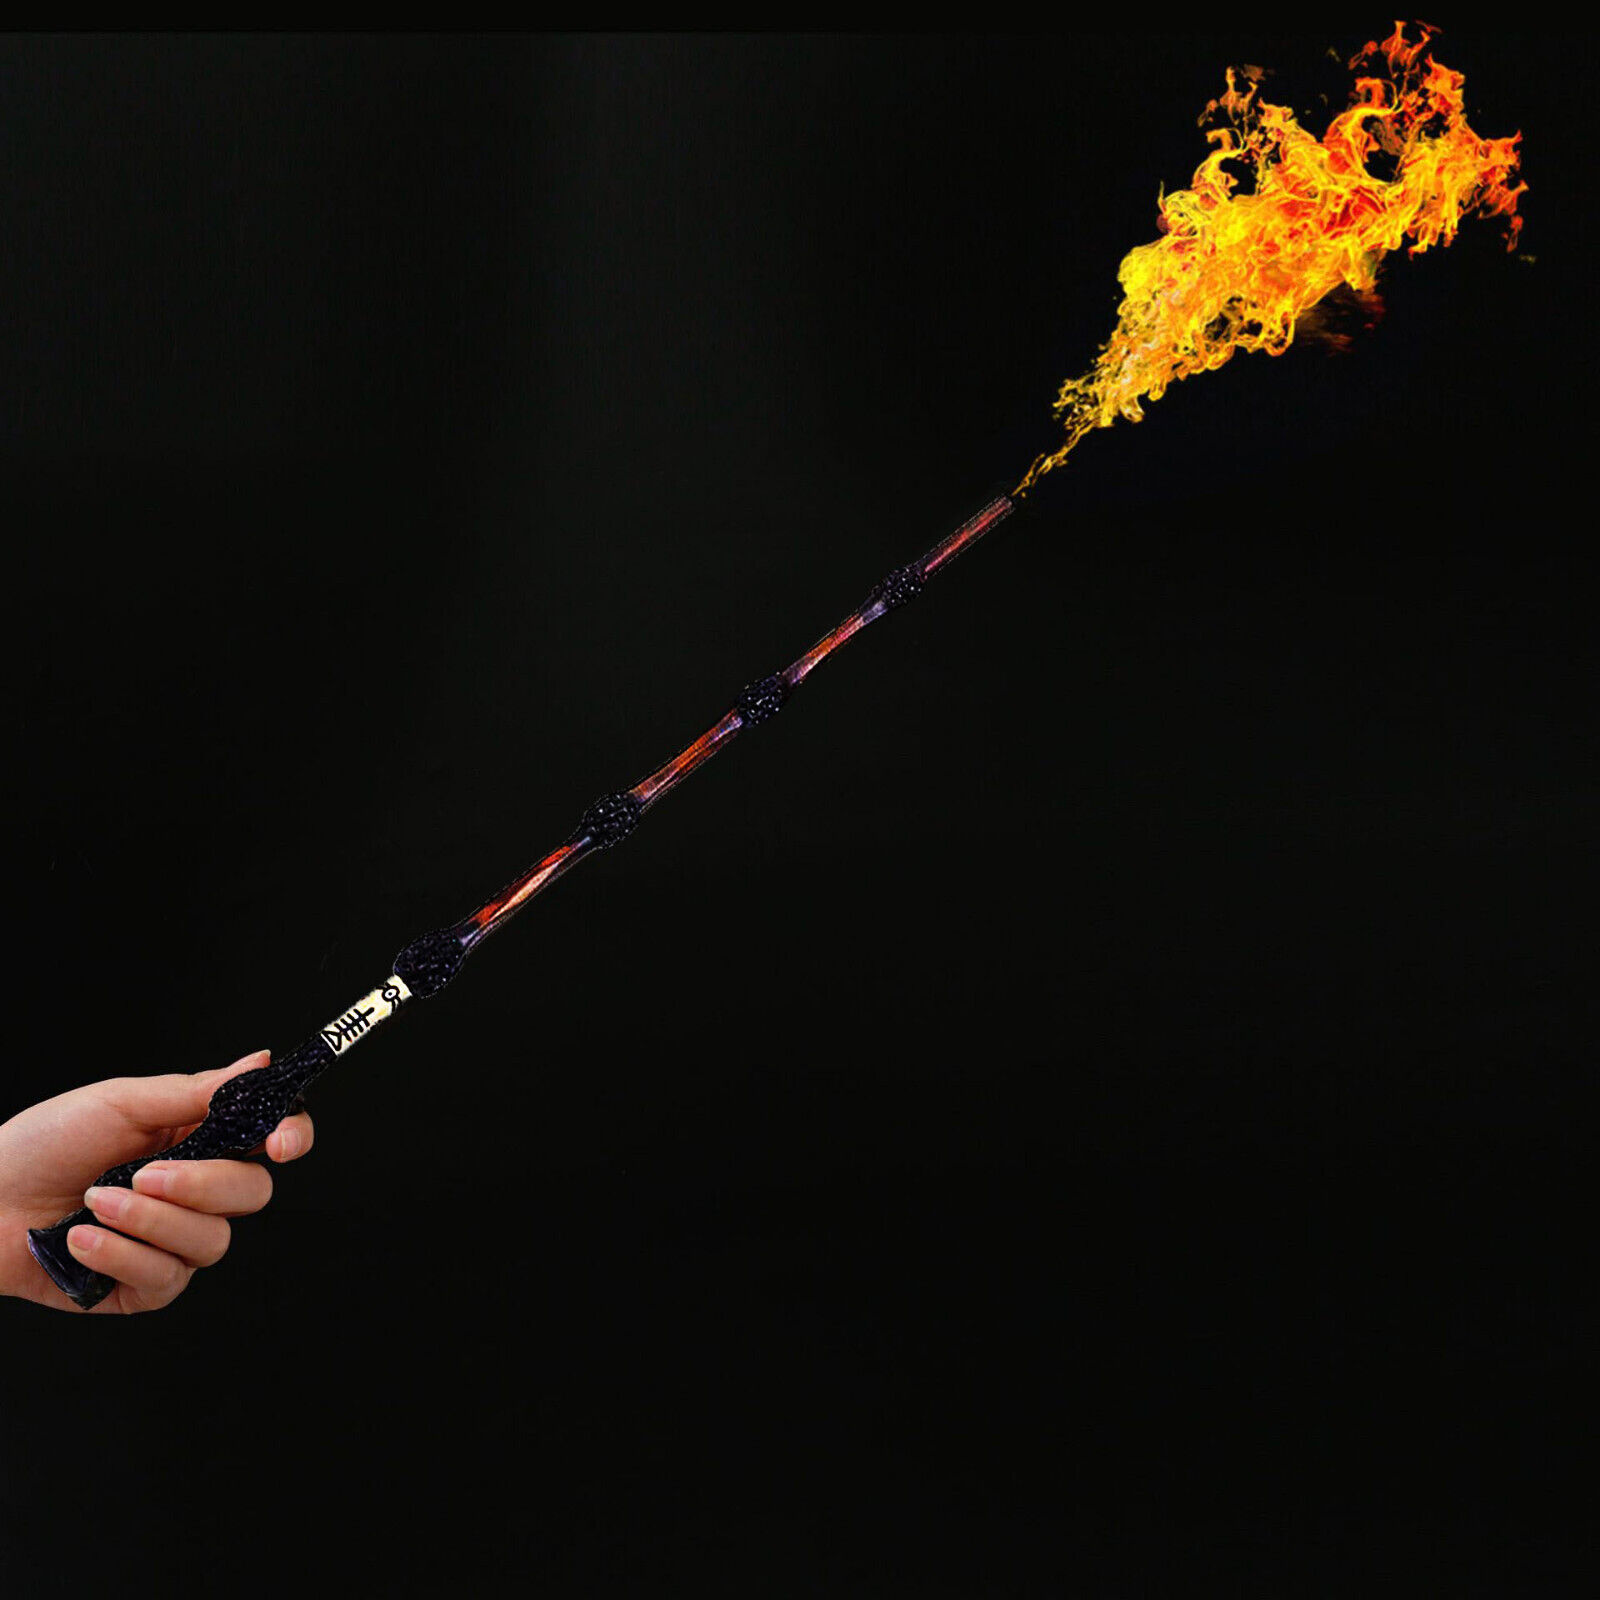 Dumbledore Fireball Wand Wizard Magic Wand Fireballs Shooting Wand Flamethrower